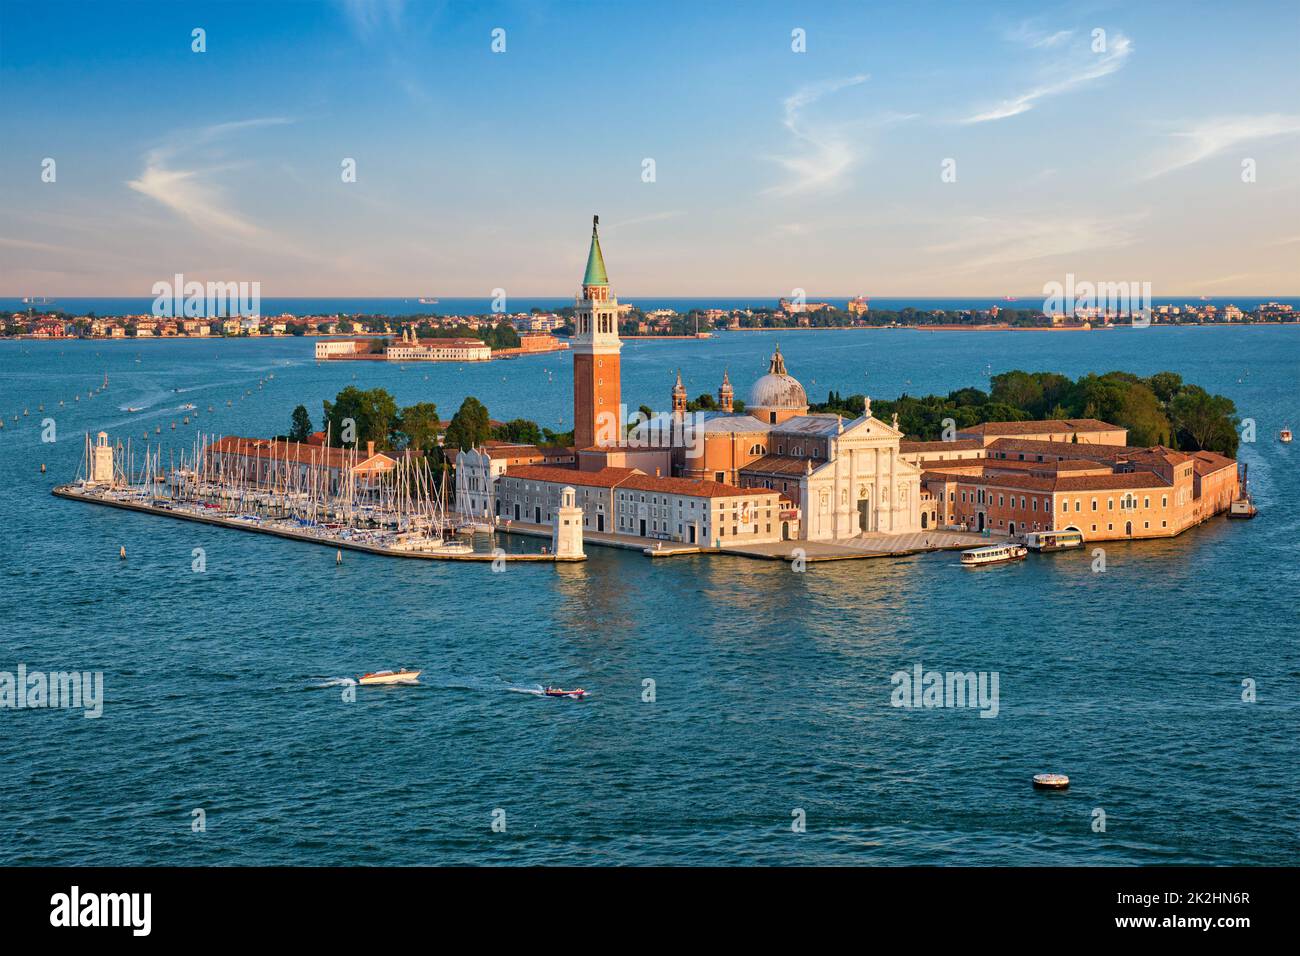 Aerial view of Venice lagoon with boats and San Giorgio di Maggiore church. Venice, Italy Stock Photo